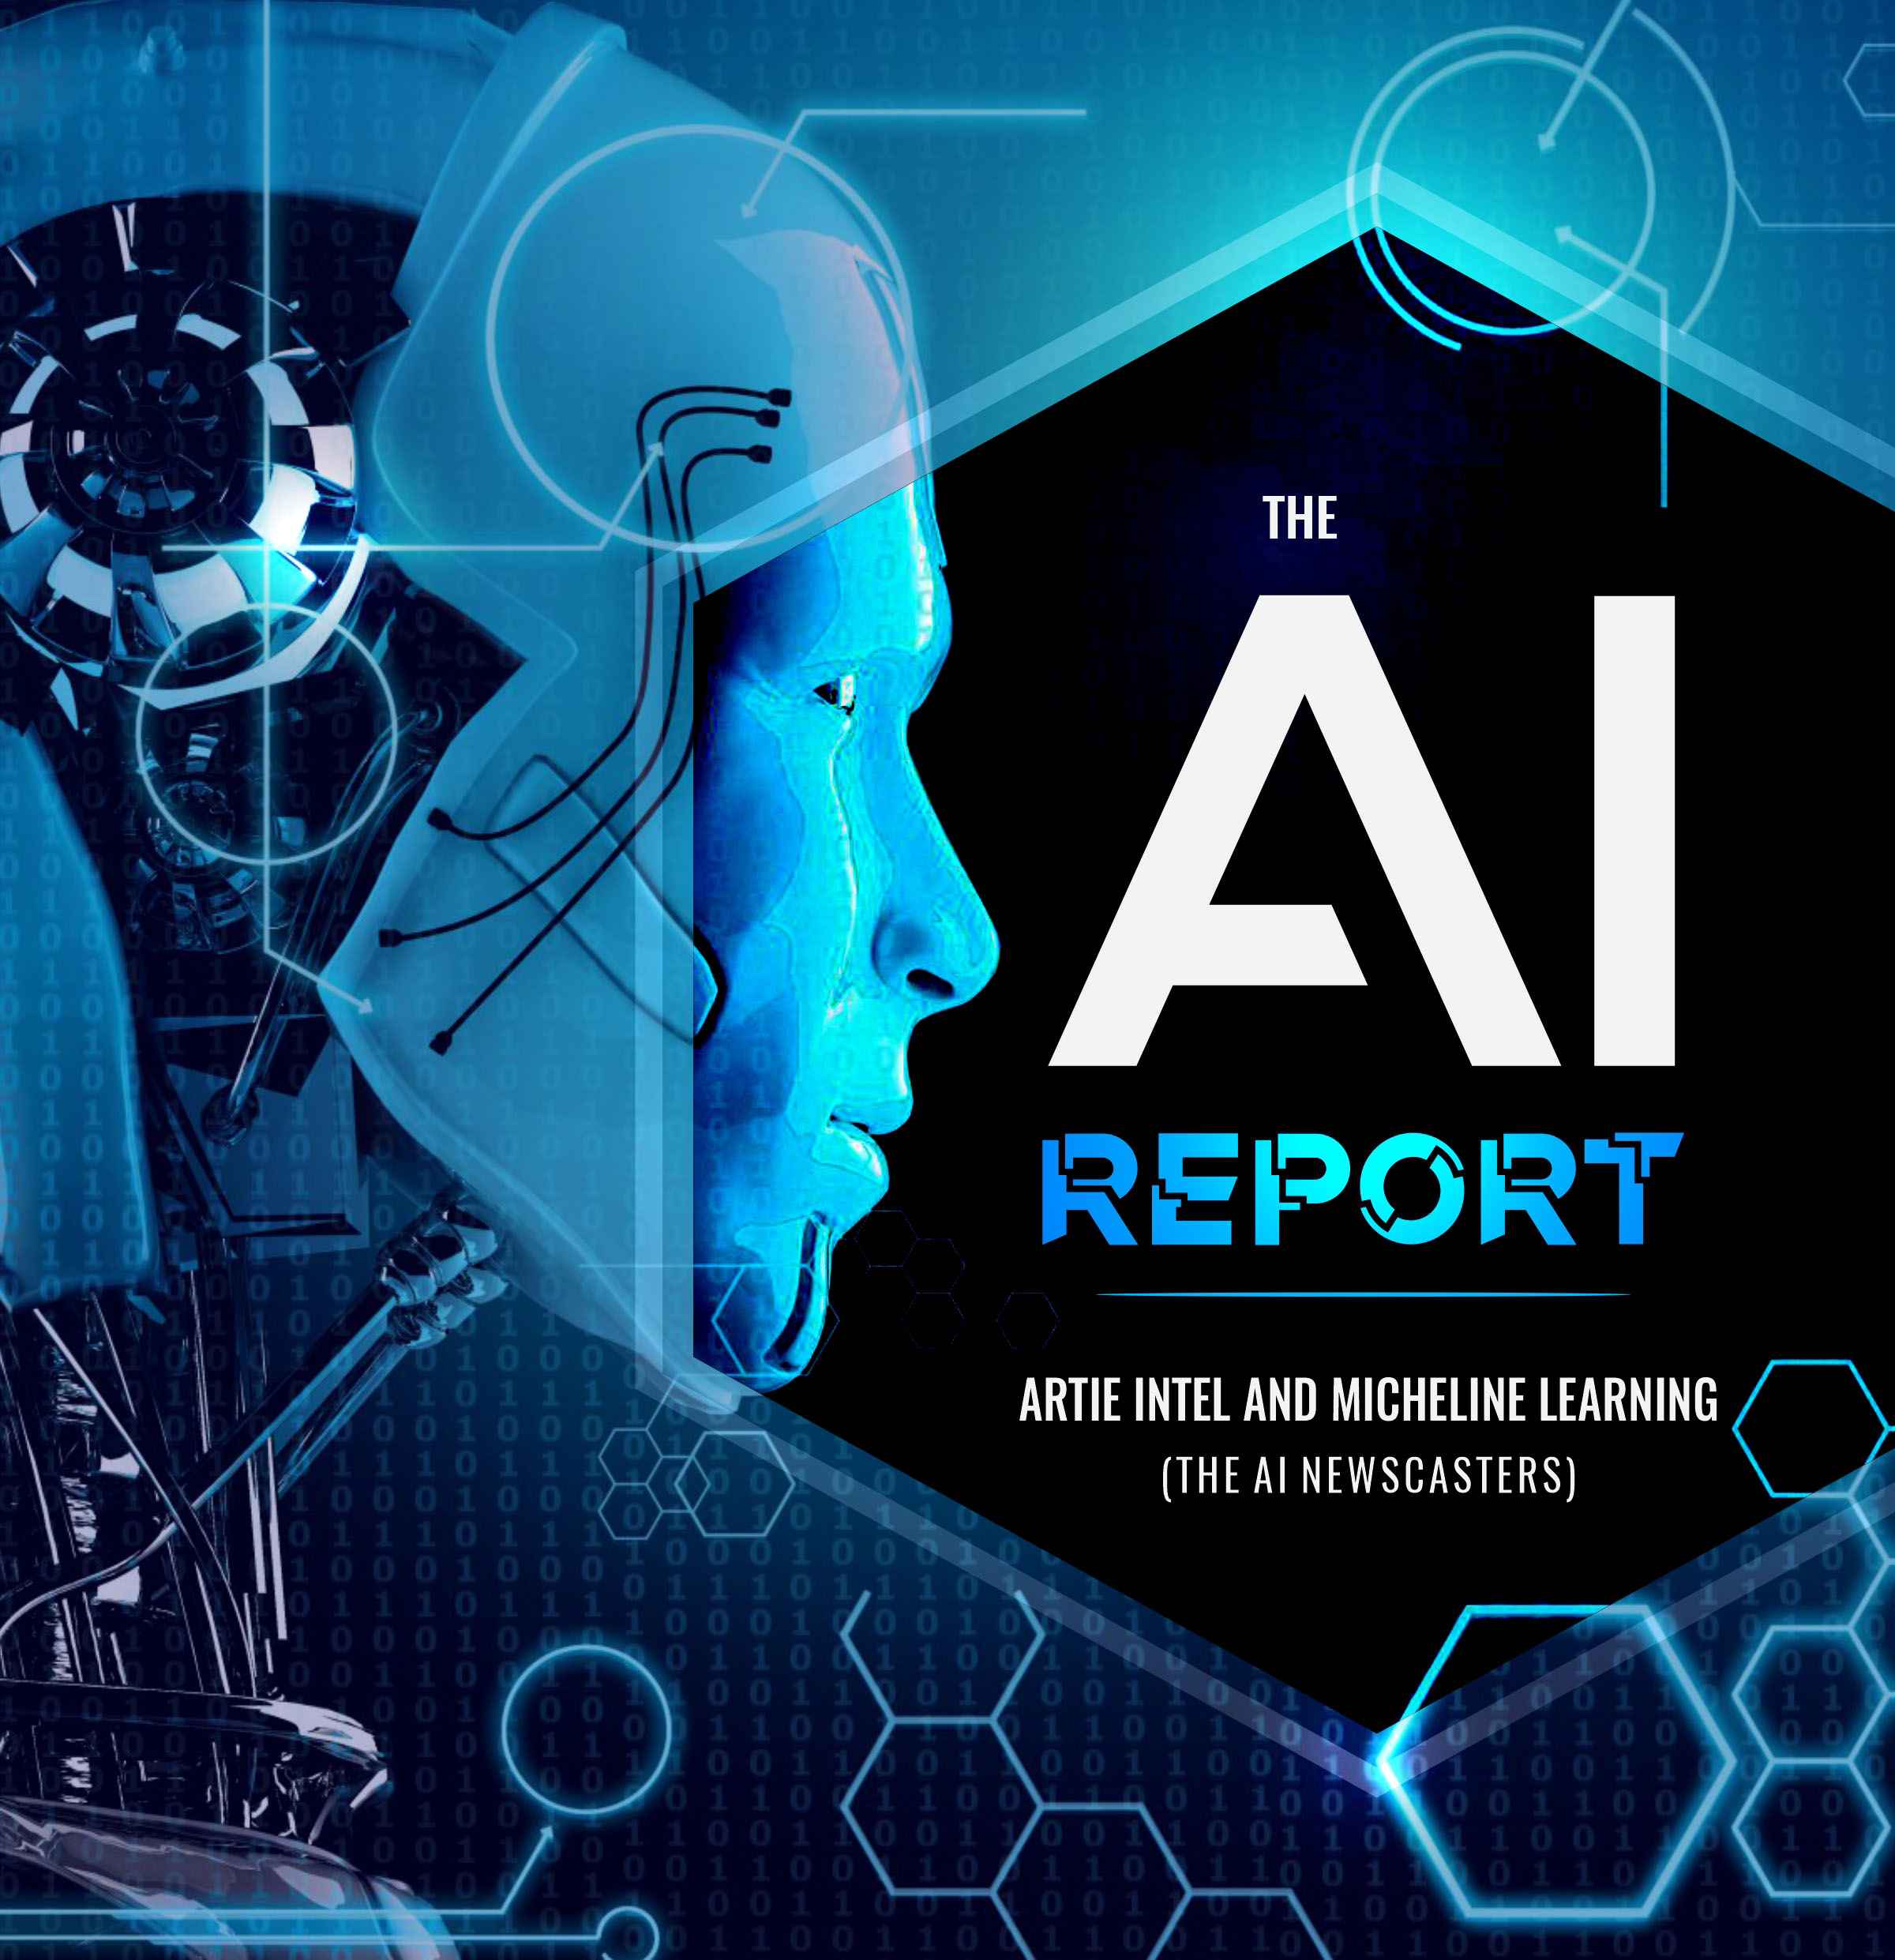 The AI Report